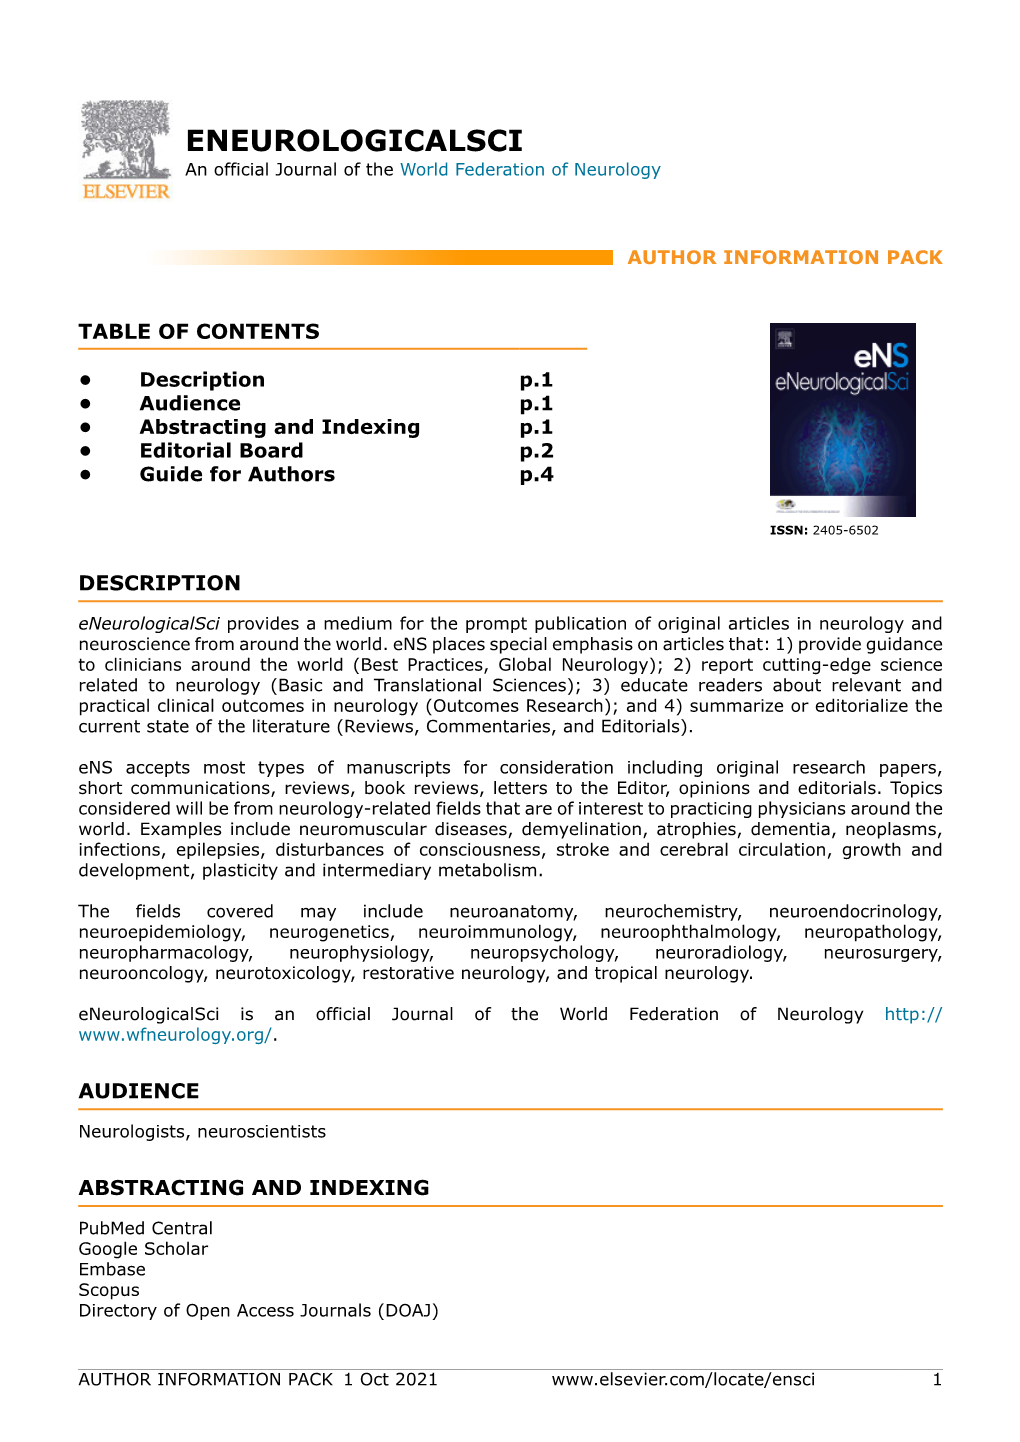 ENEUROLOGICALSCI an Official Journal of the World Federation of Neurology